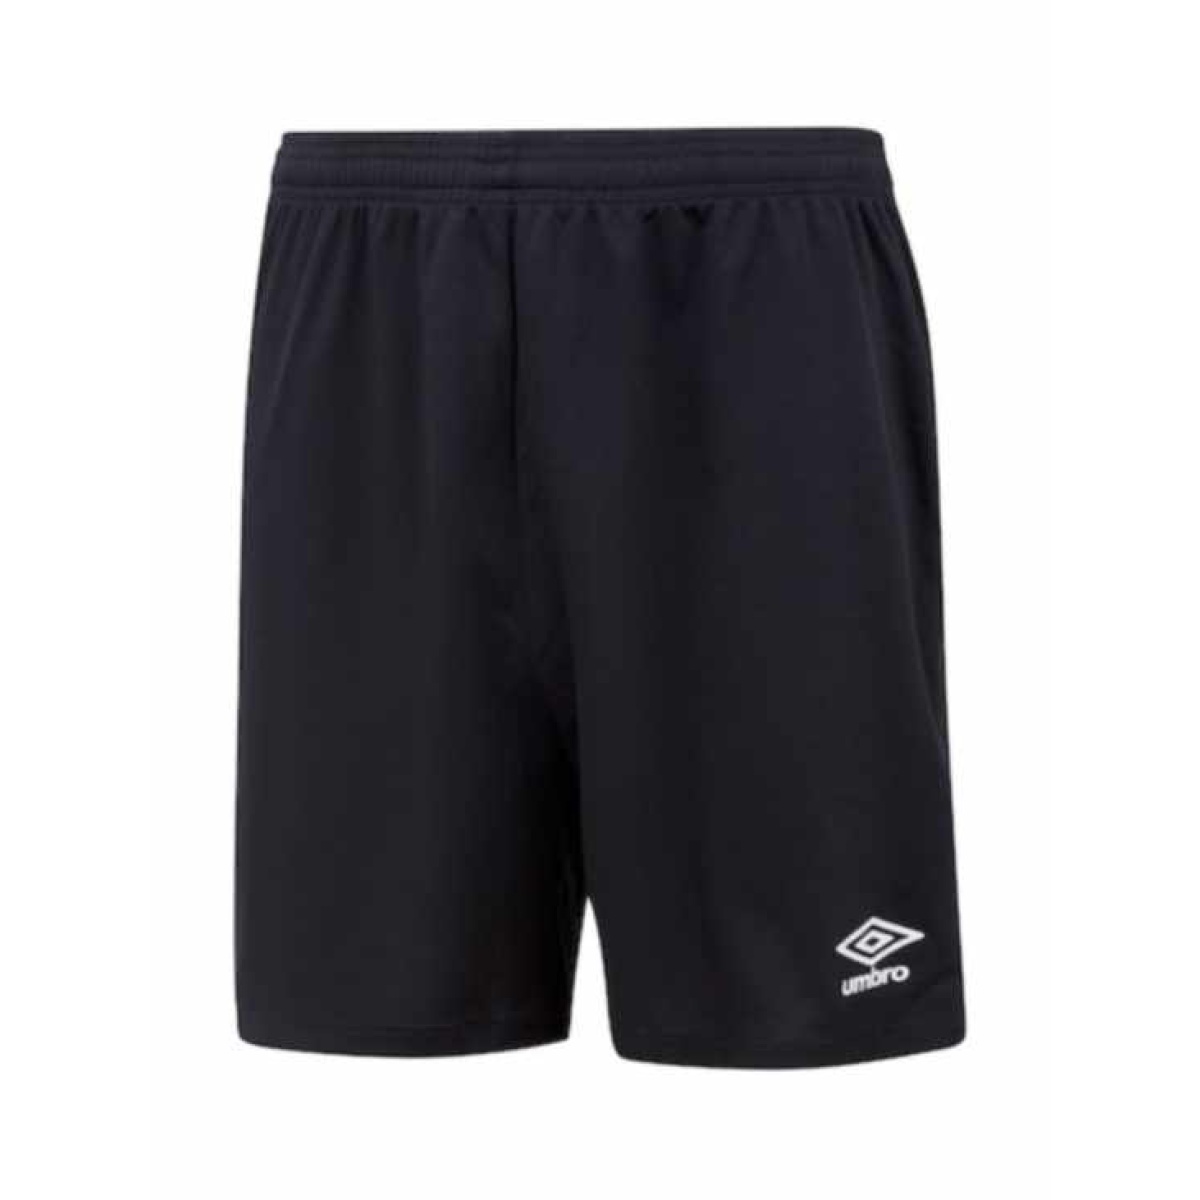 Thundersley Rovers FC - Club GK shorts, Thundersley Rovers FC